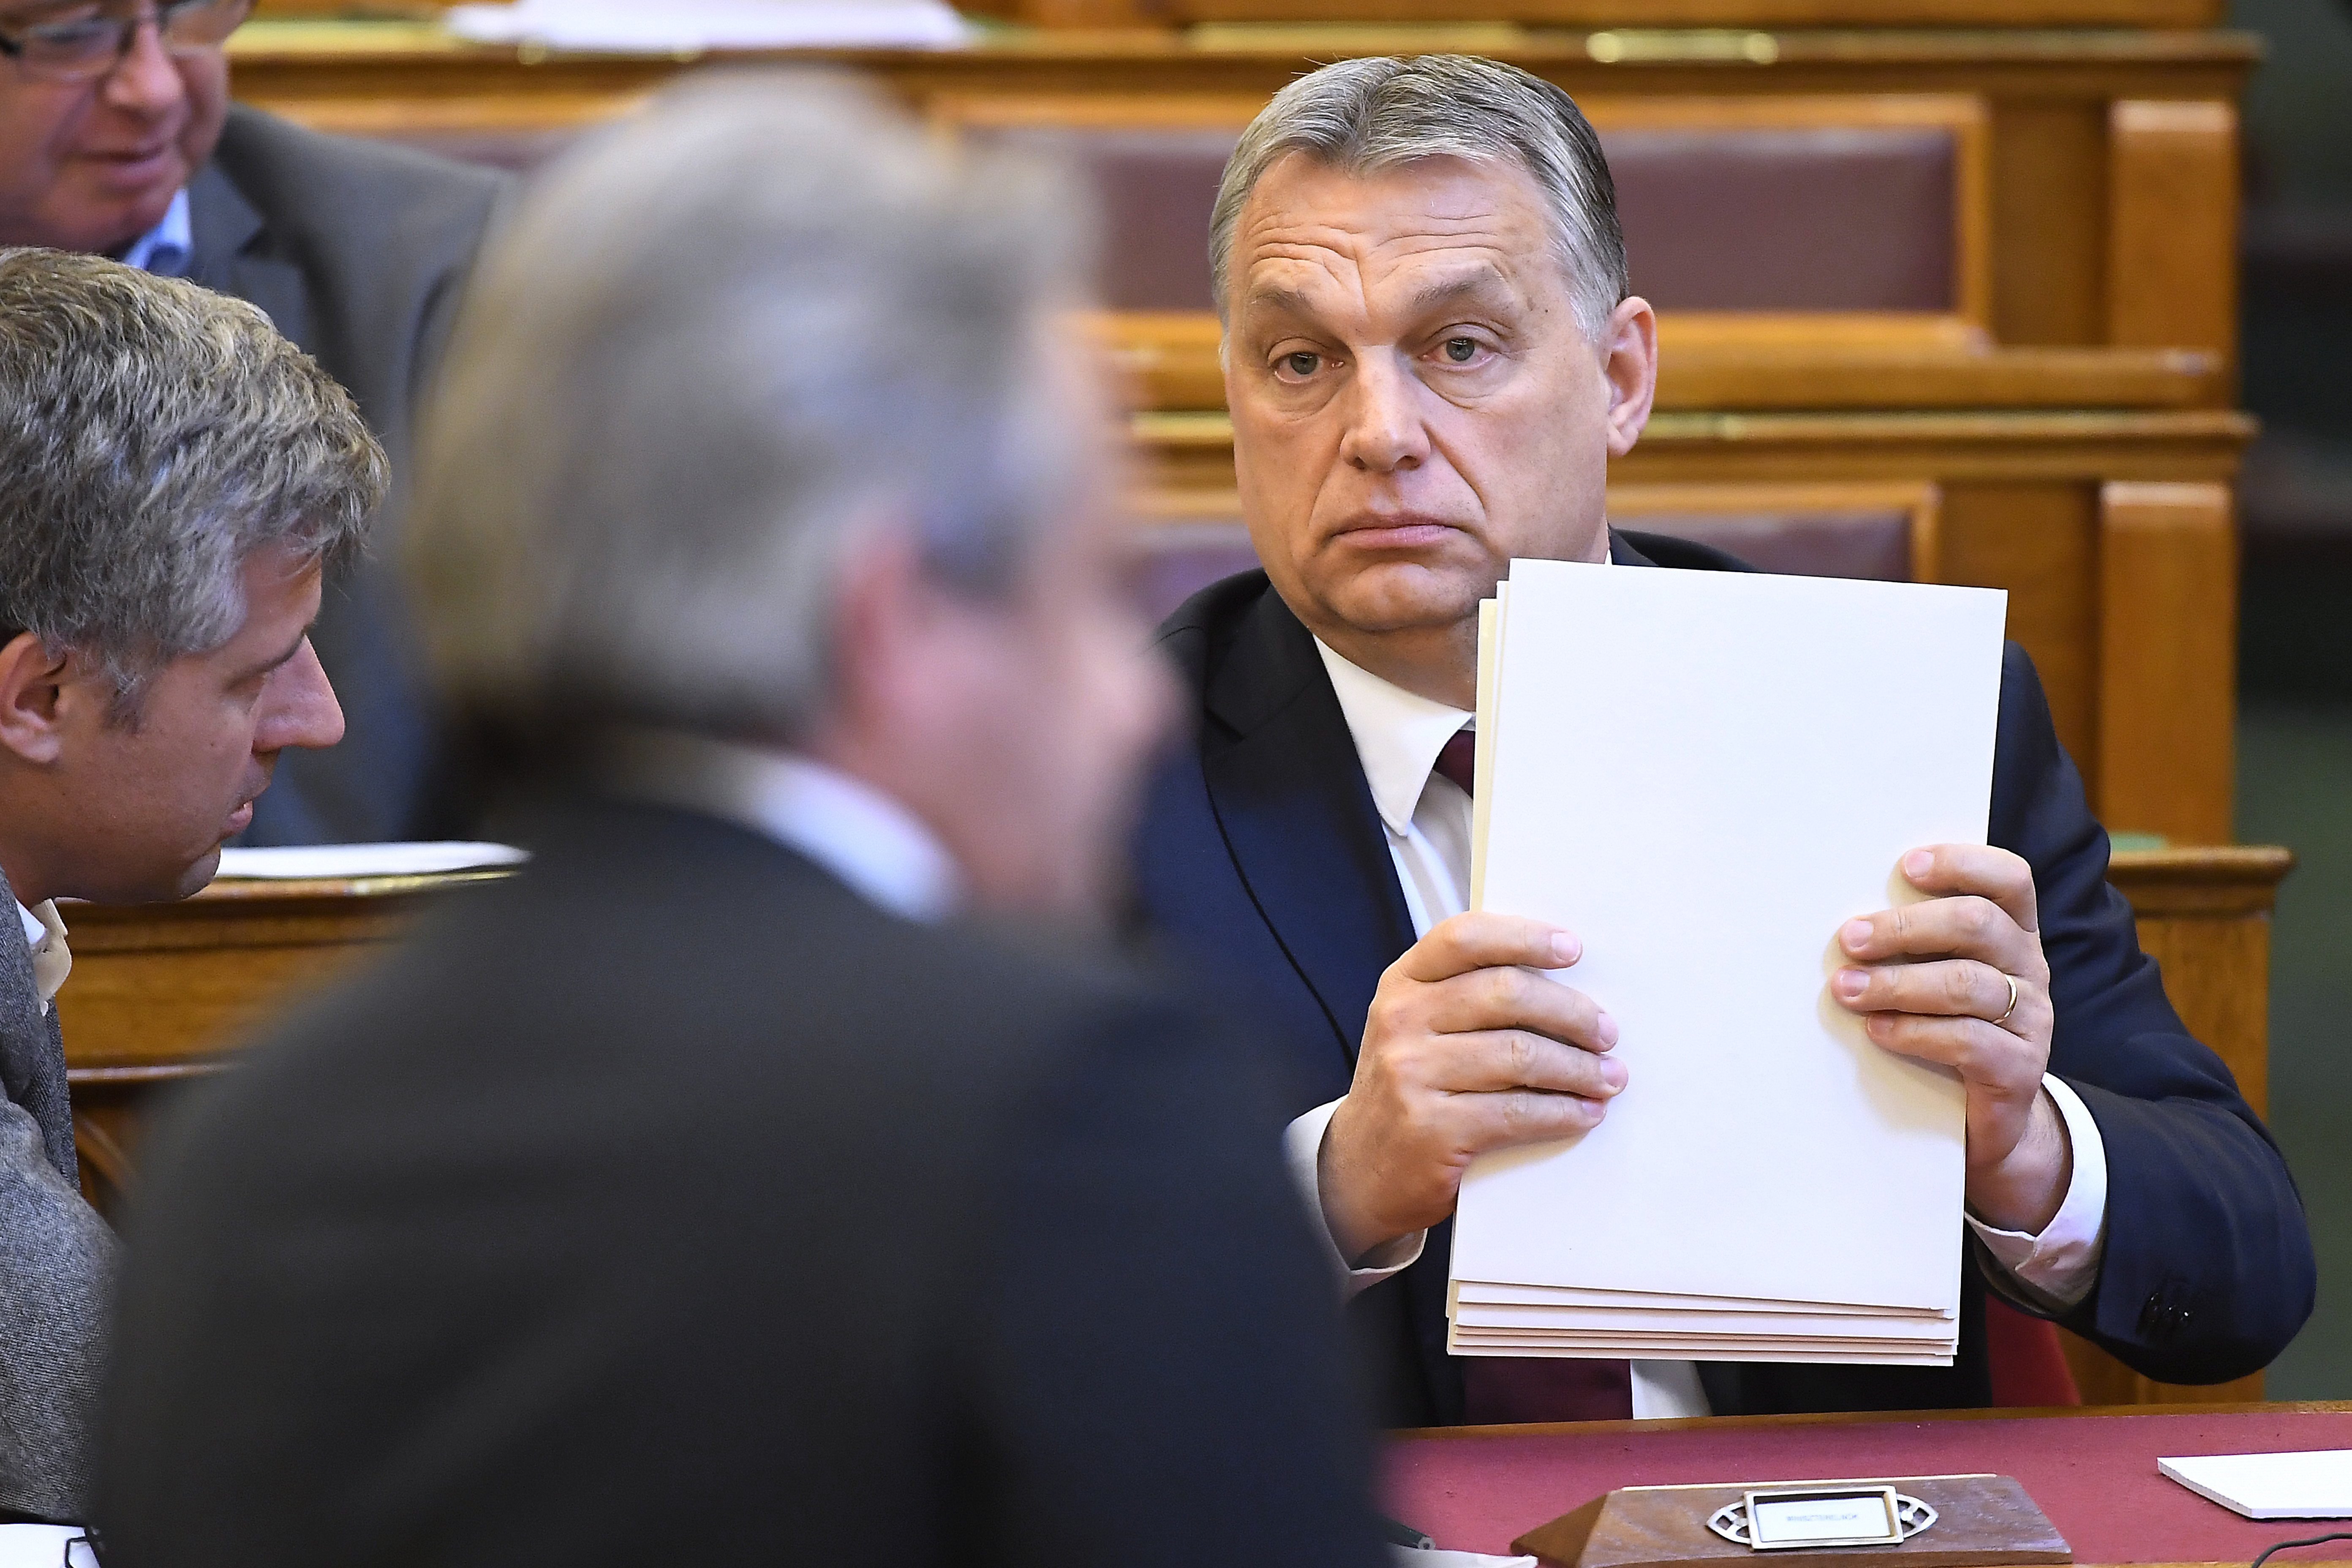 Korábban Orbánt is idegesítette, ha valaki úgy beszélt, mint Kósa Lajos mostanában